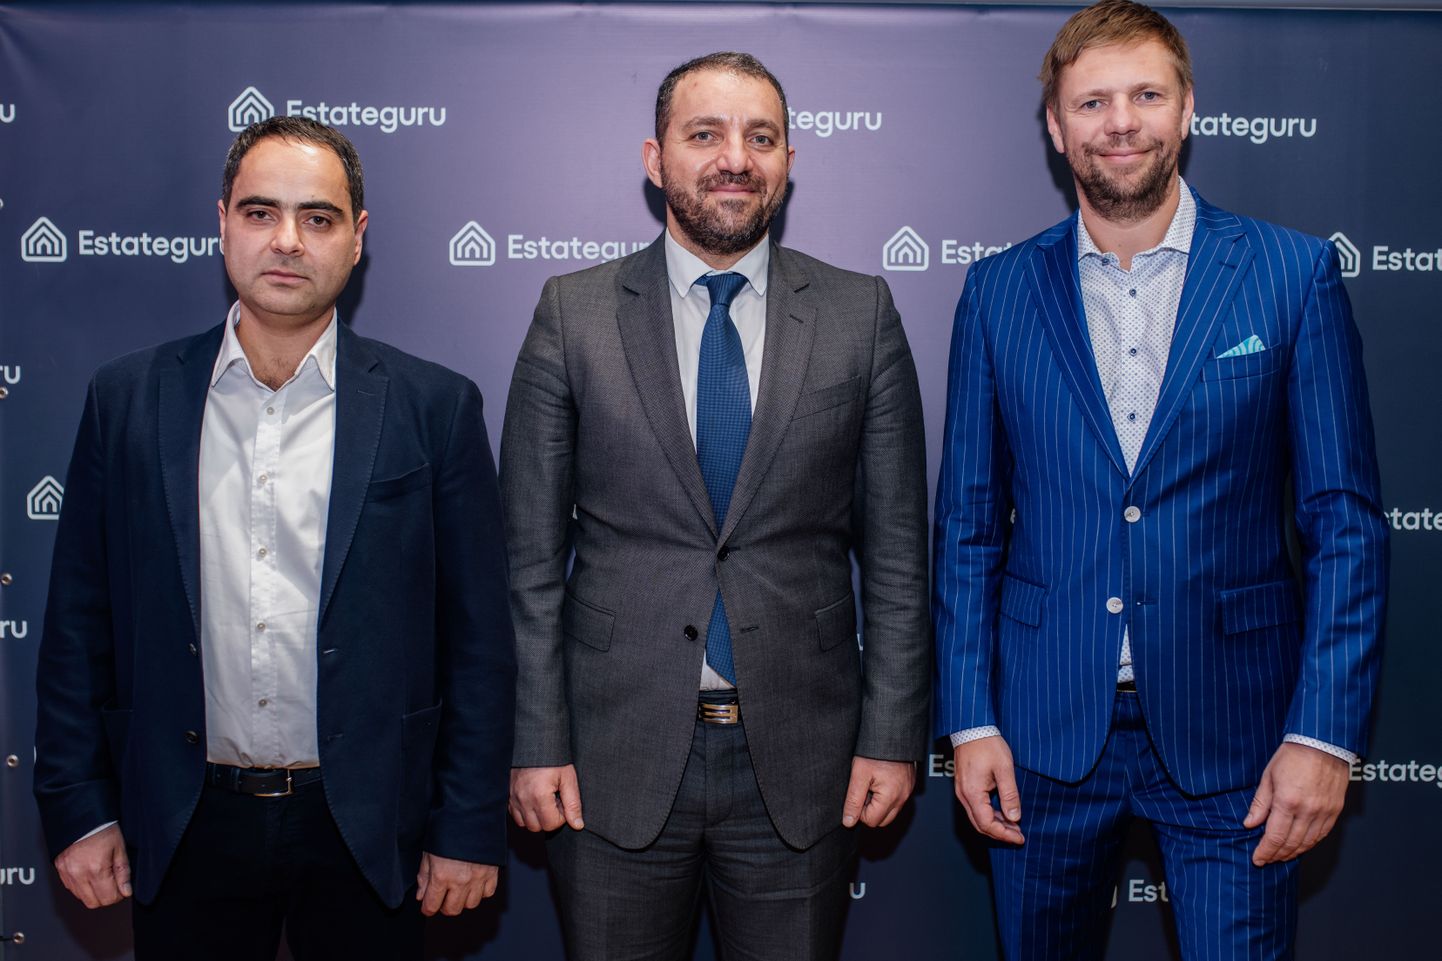 Estateguru tehnoloogiajuht Ararat Yuzbashyan, Armeenia majandusminister Vahan Kerobyan ja kaasasutaja Marek Pärtel.